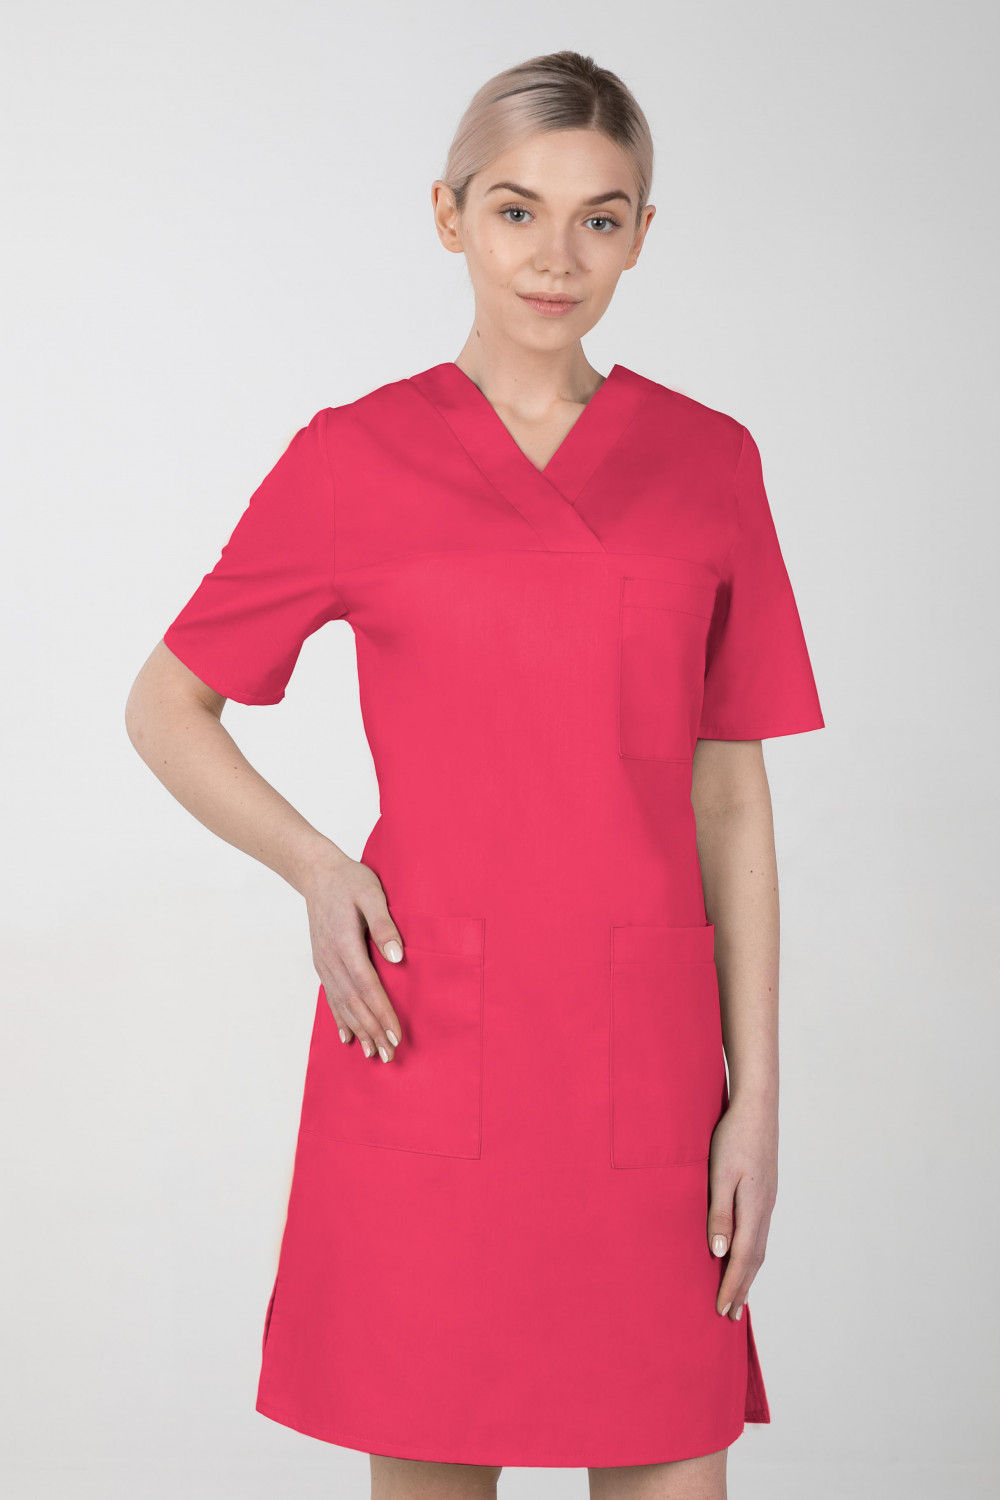 M-076FX Sukienka damska elastyczna medyczna fartuch kosmetyczny kolor amarant